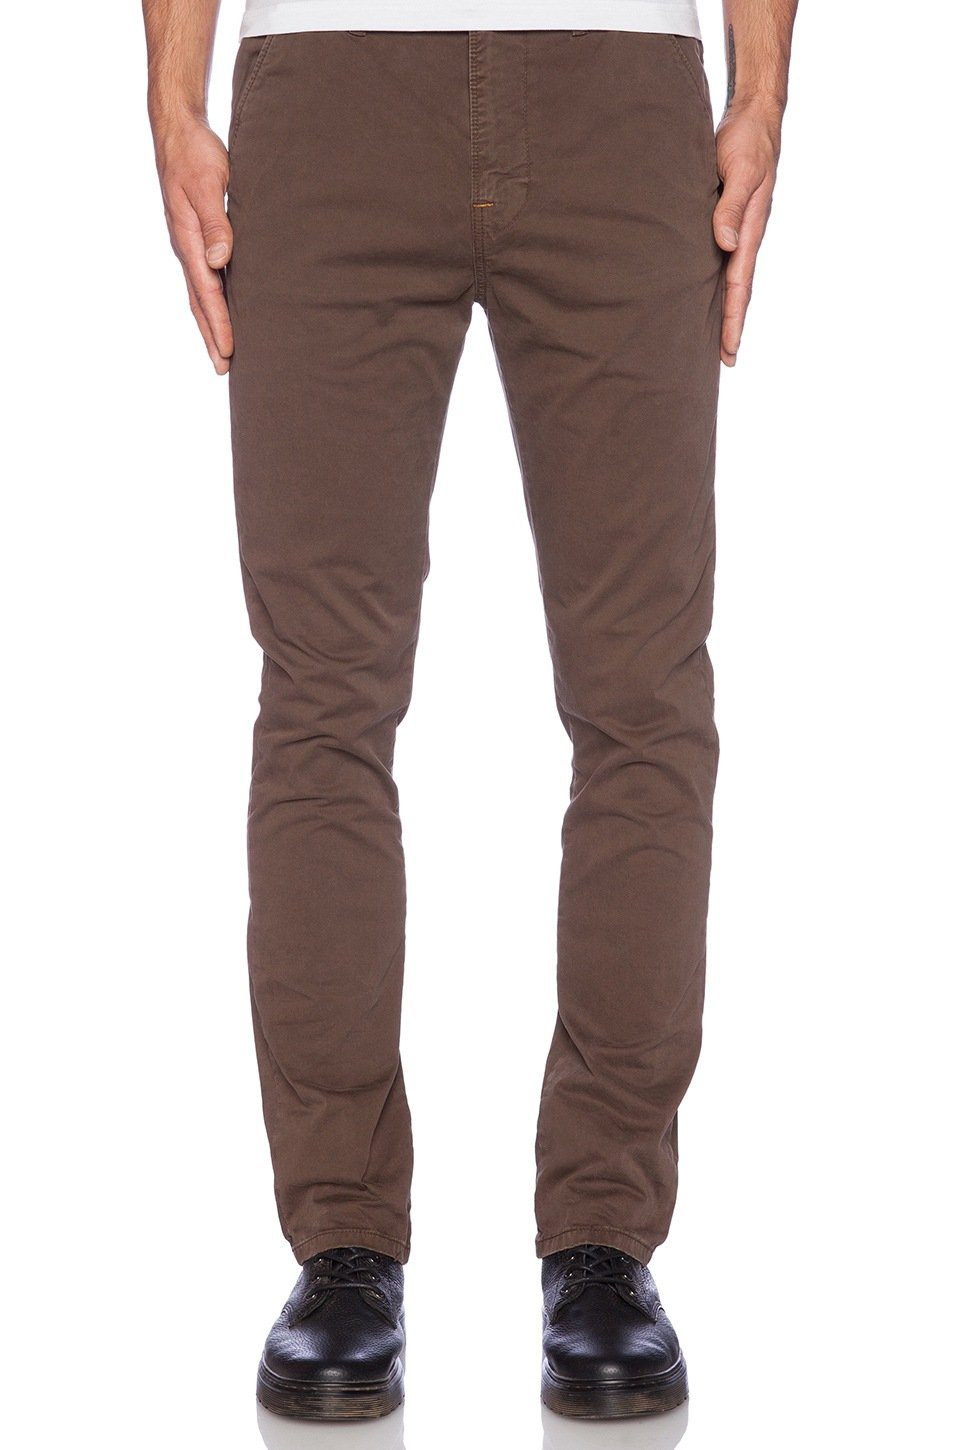 Nudie Jeans Slim-fit-Jeans Herren Chino Hose - Khaki Slim Dark Brown Dye  online kaufen | OTTO